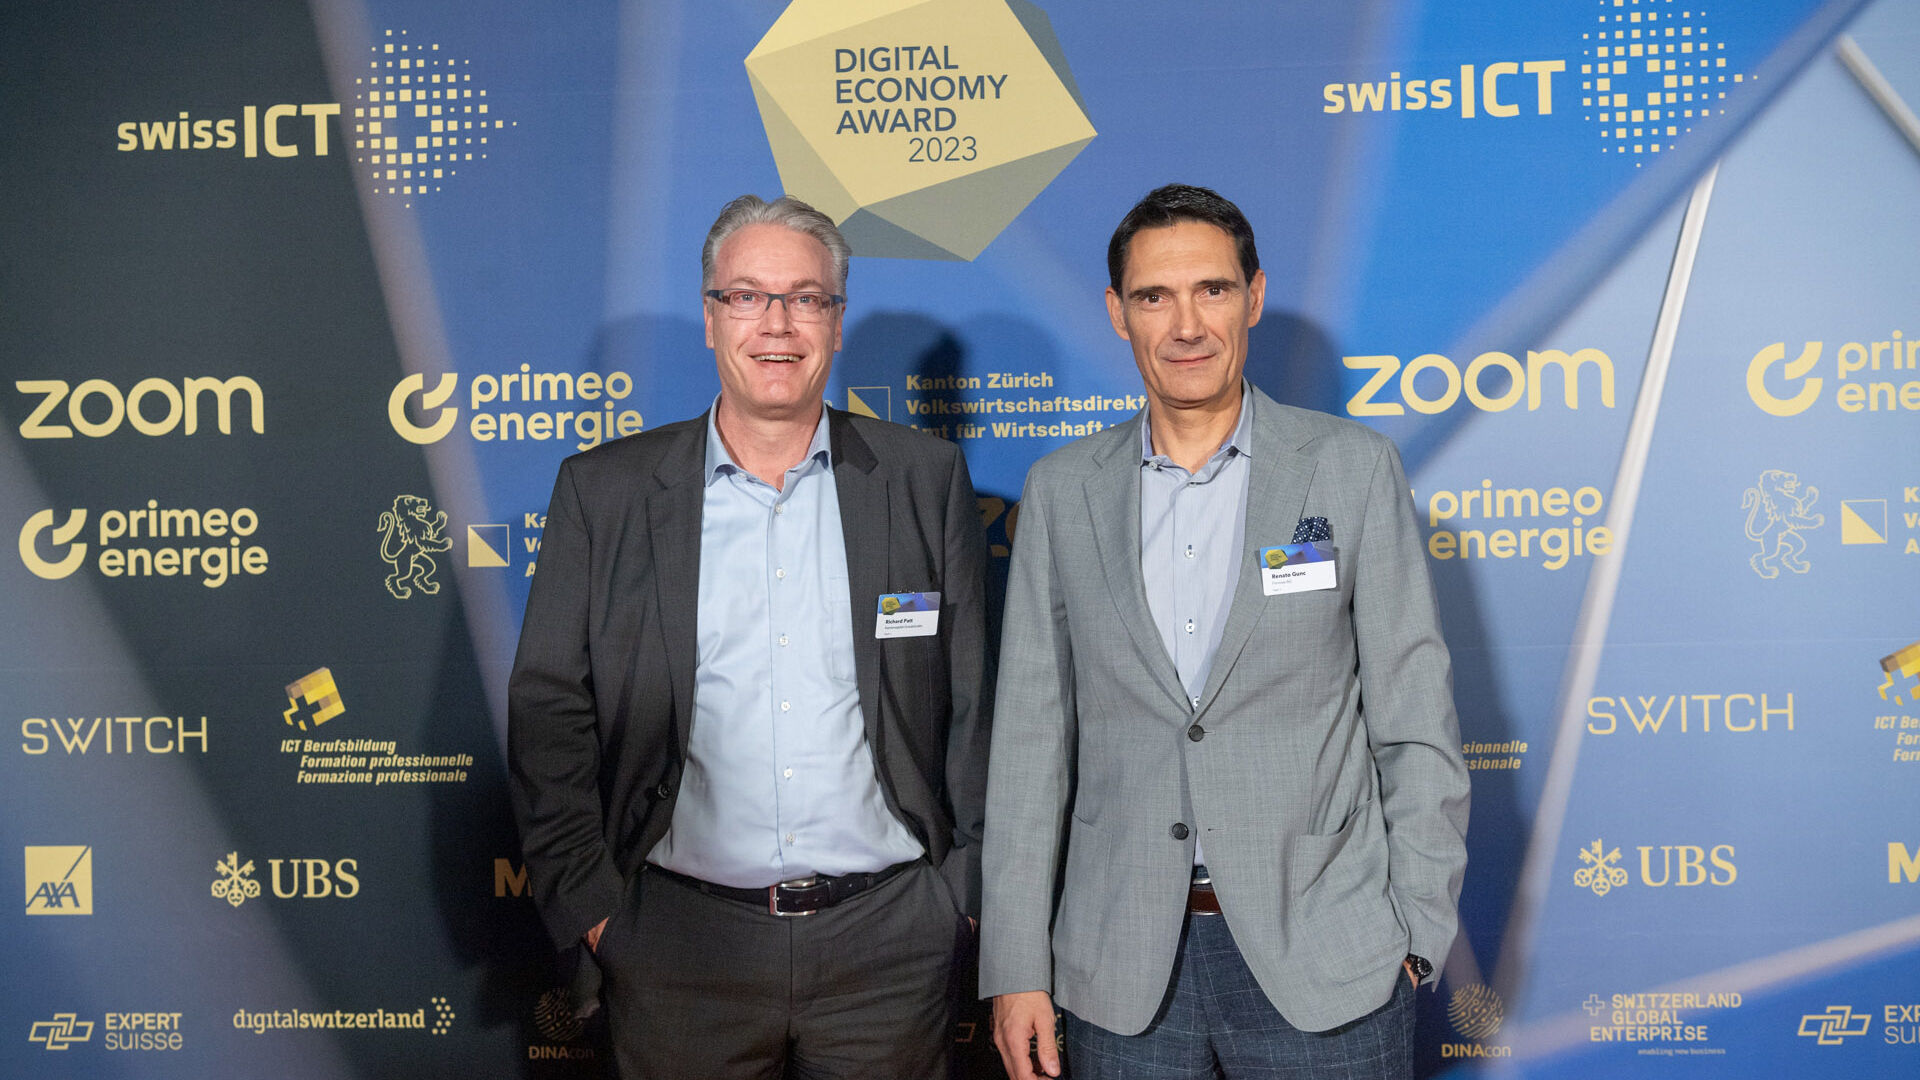 Cena za digitálnu ekonomiku: fotogaléria z odovzdávania cien na Hallenstadion v Zürichu vo Švajčiarsku 16. novembra 2023